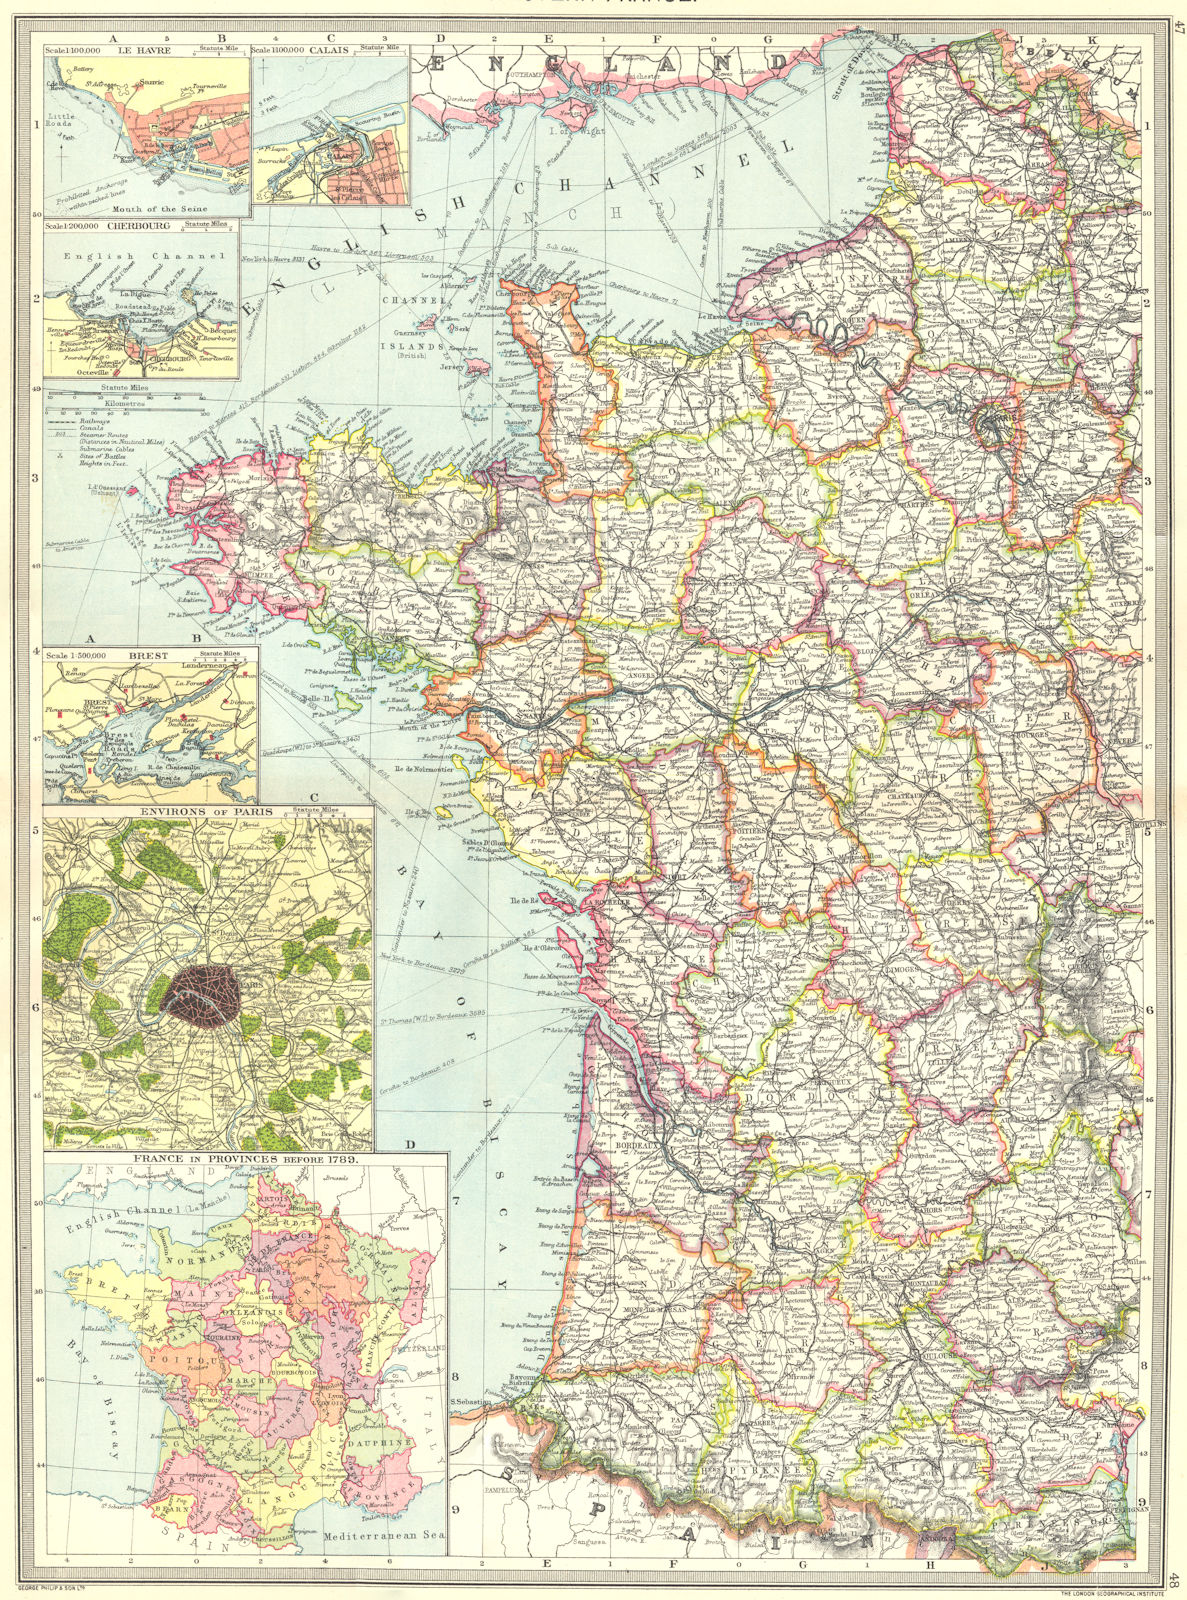 WEST FRANCE. Le Havre Calais Cherbourg Brest Paris provinces 1789 1907 old map